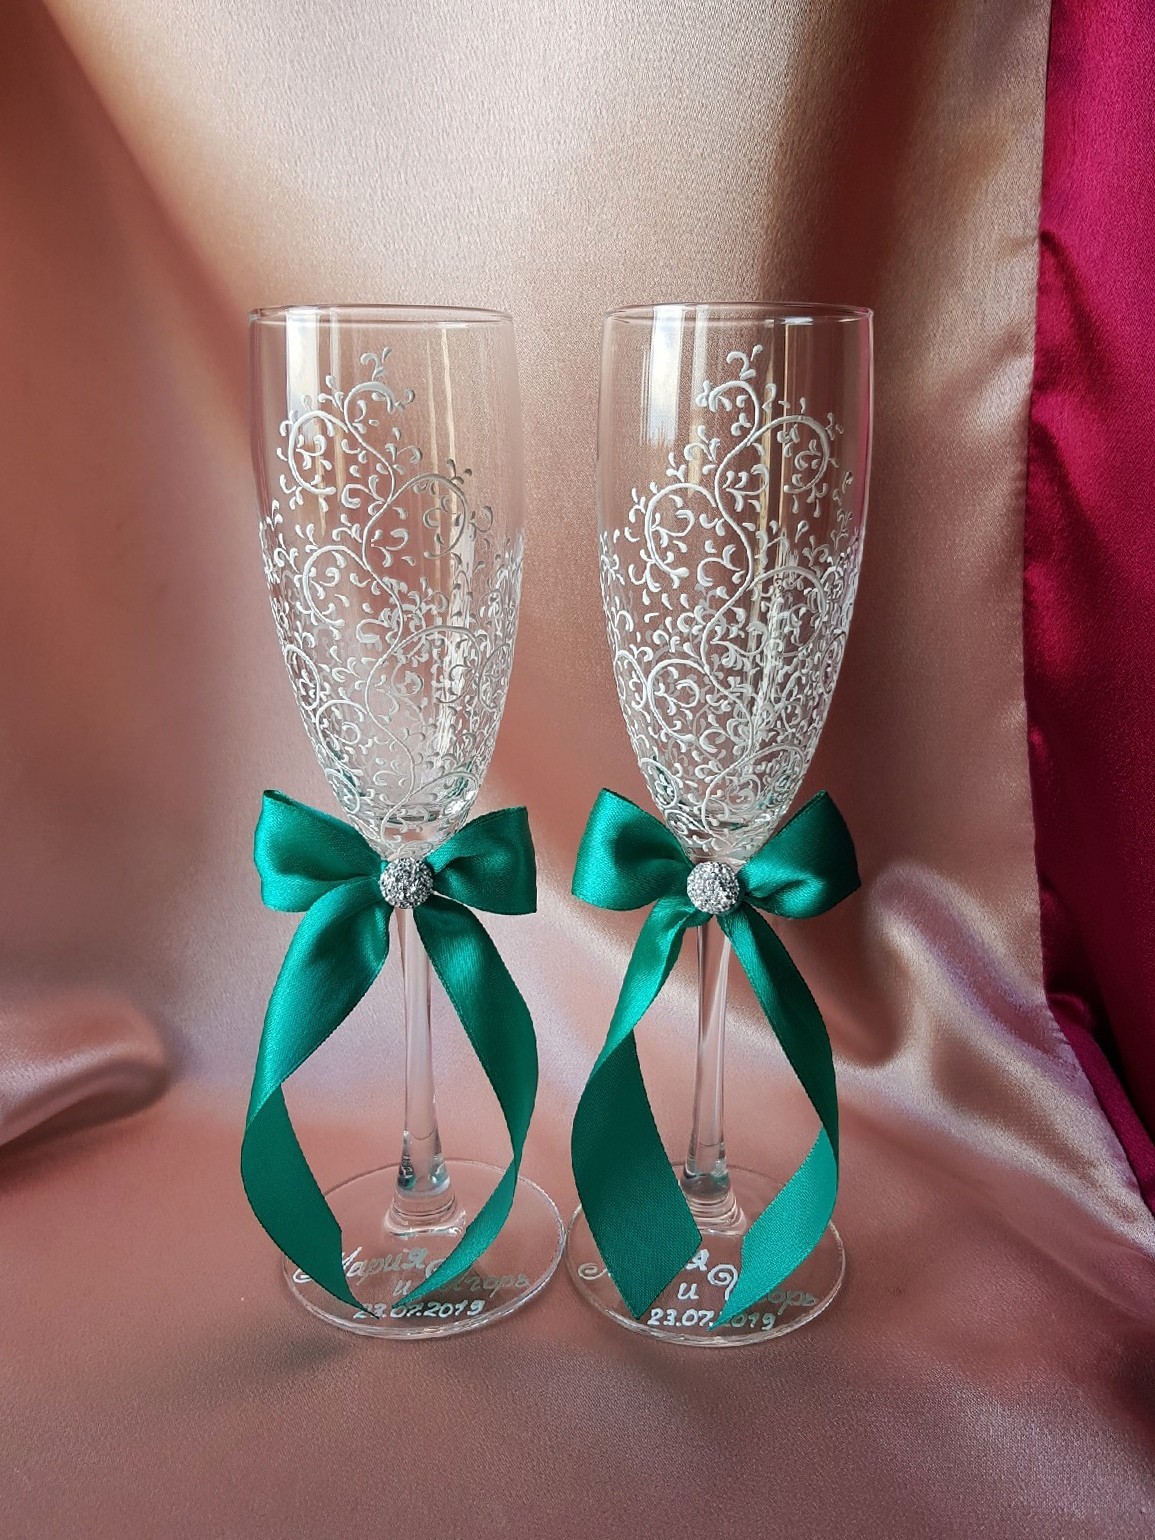 Как украсить свадебные бокалы своими руками: пошаговые мастер-классы с фото